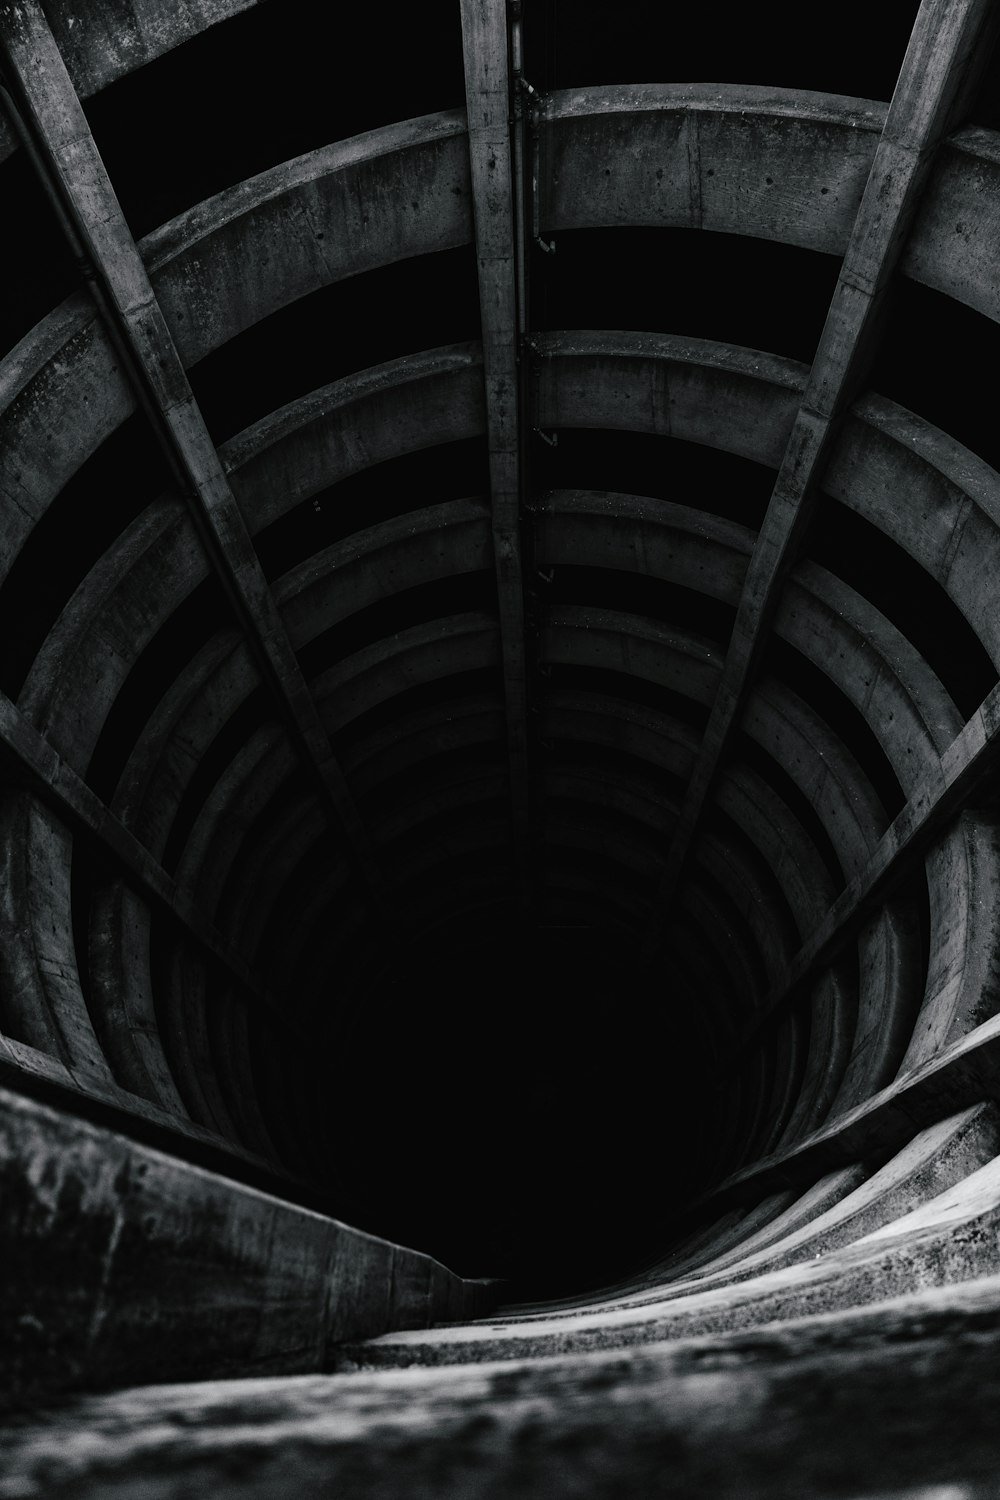 나무 터널의 그레이스케일 사진